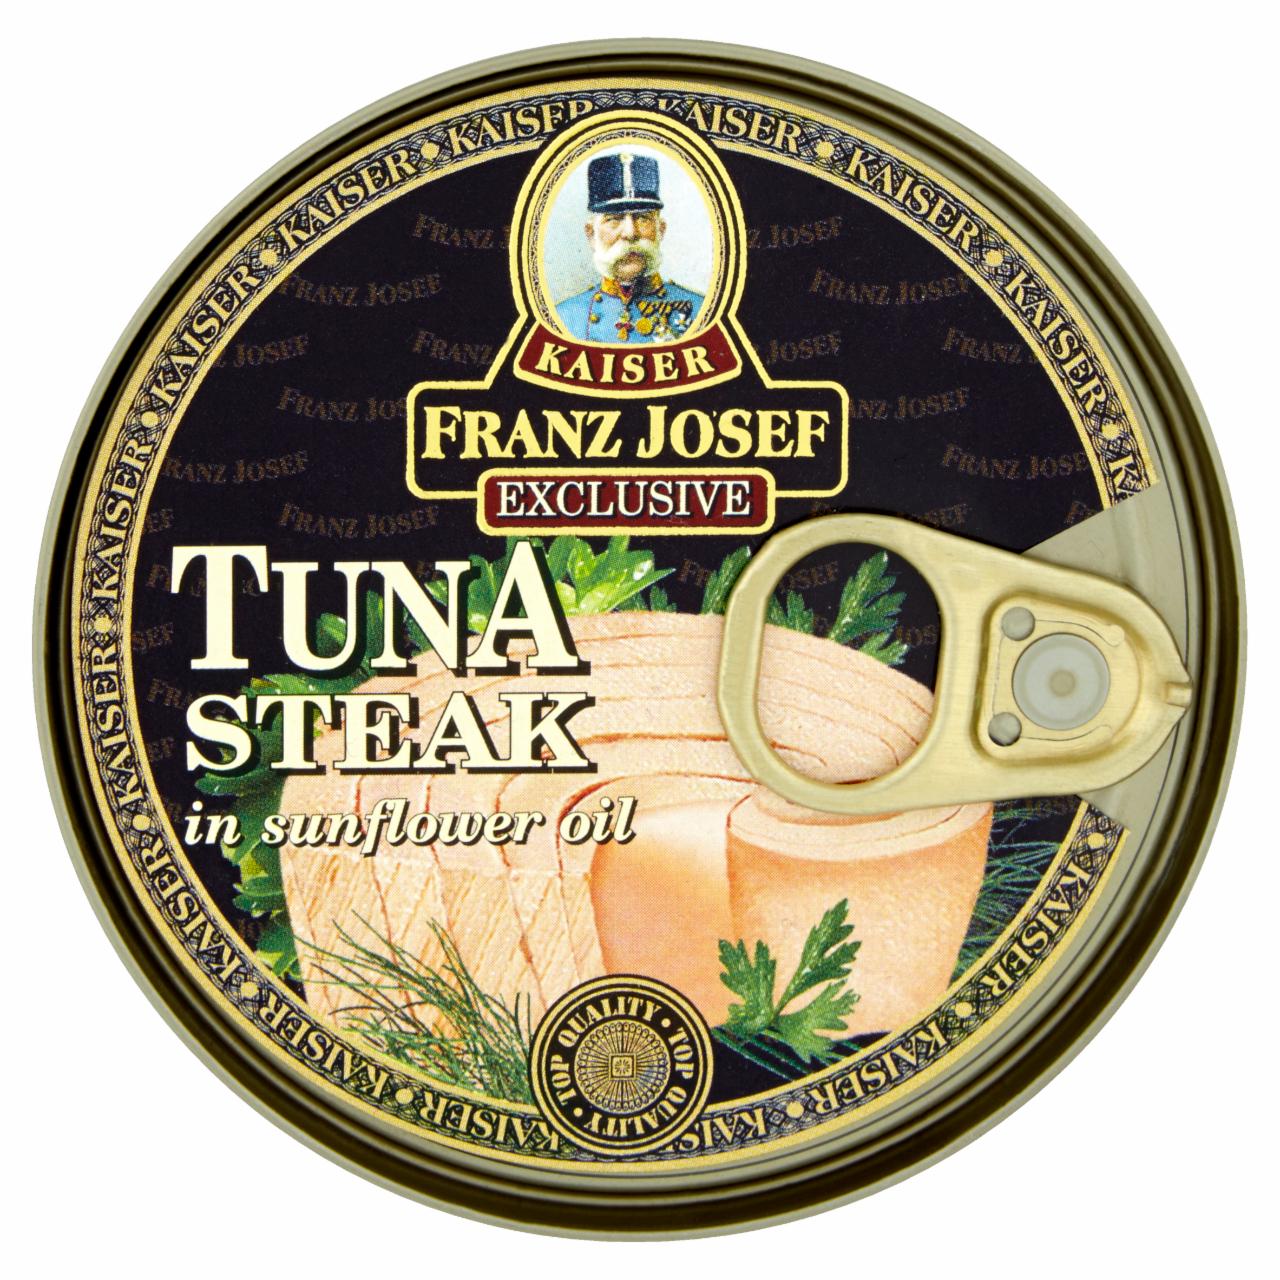 Photo - Kaiser Franz Josef Exclusive Tuna Steak in Sunflower Oil 170 g